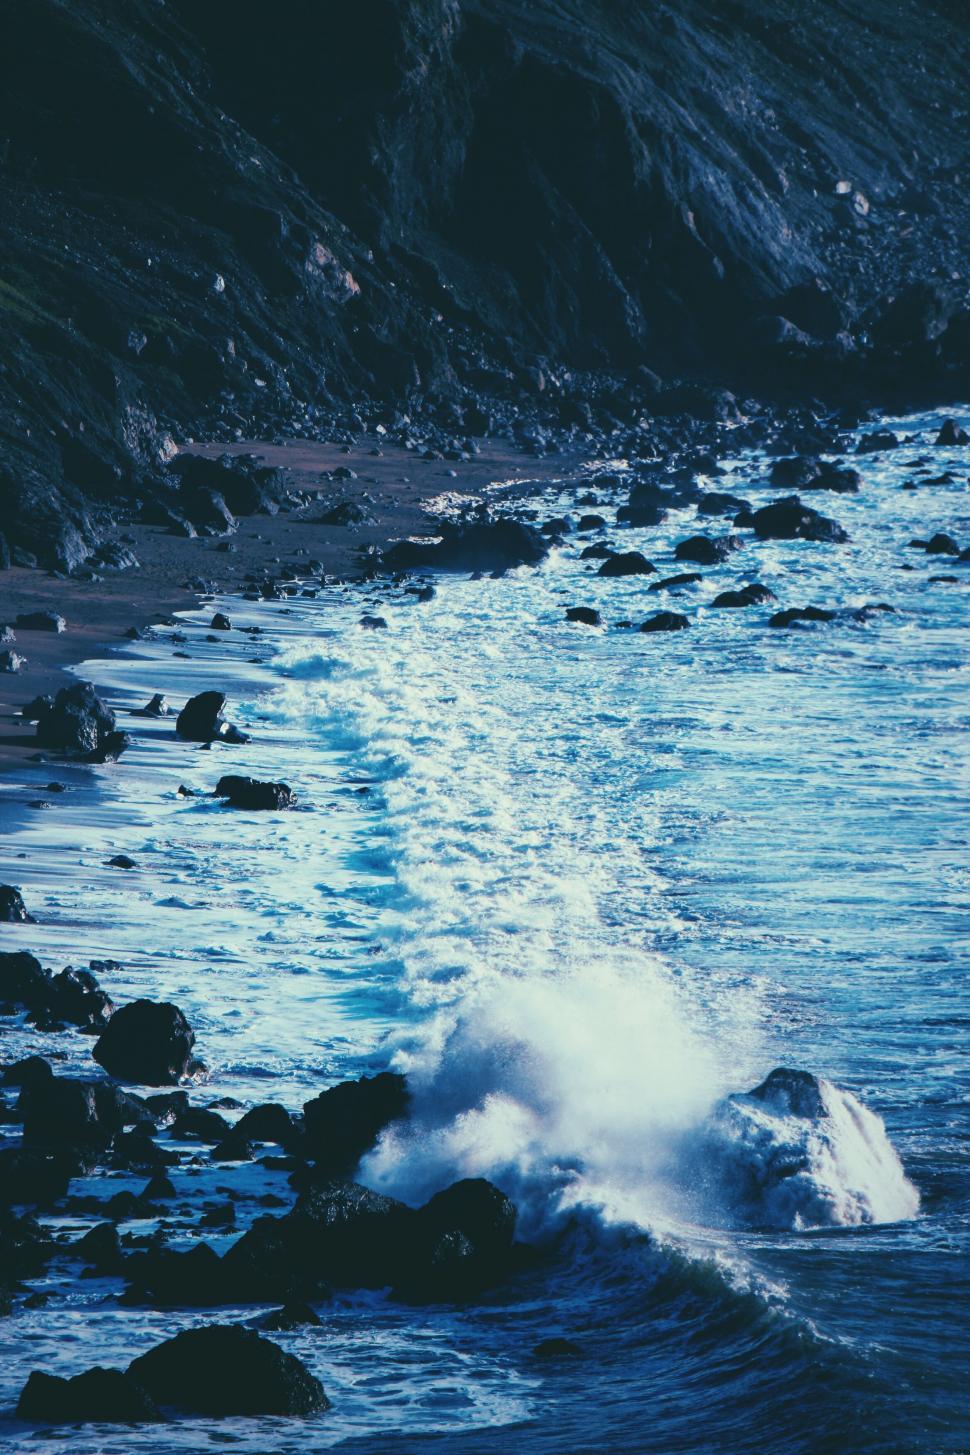 Free Image of Dramatic coastline with crashing waves 